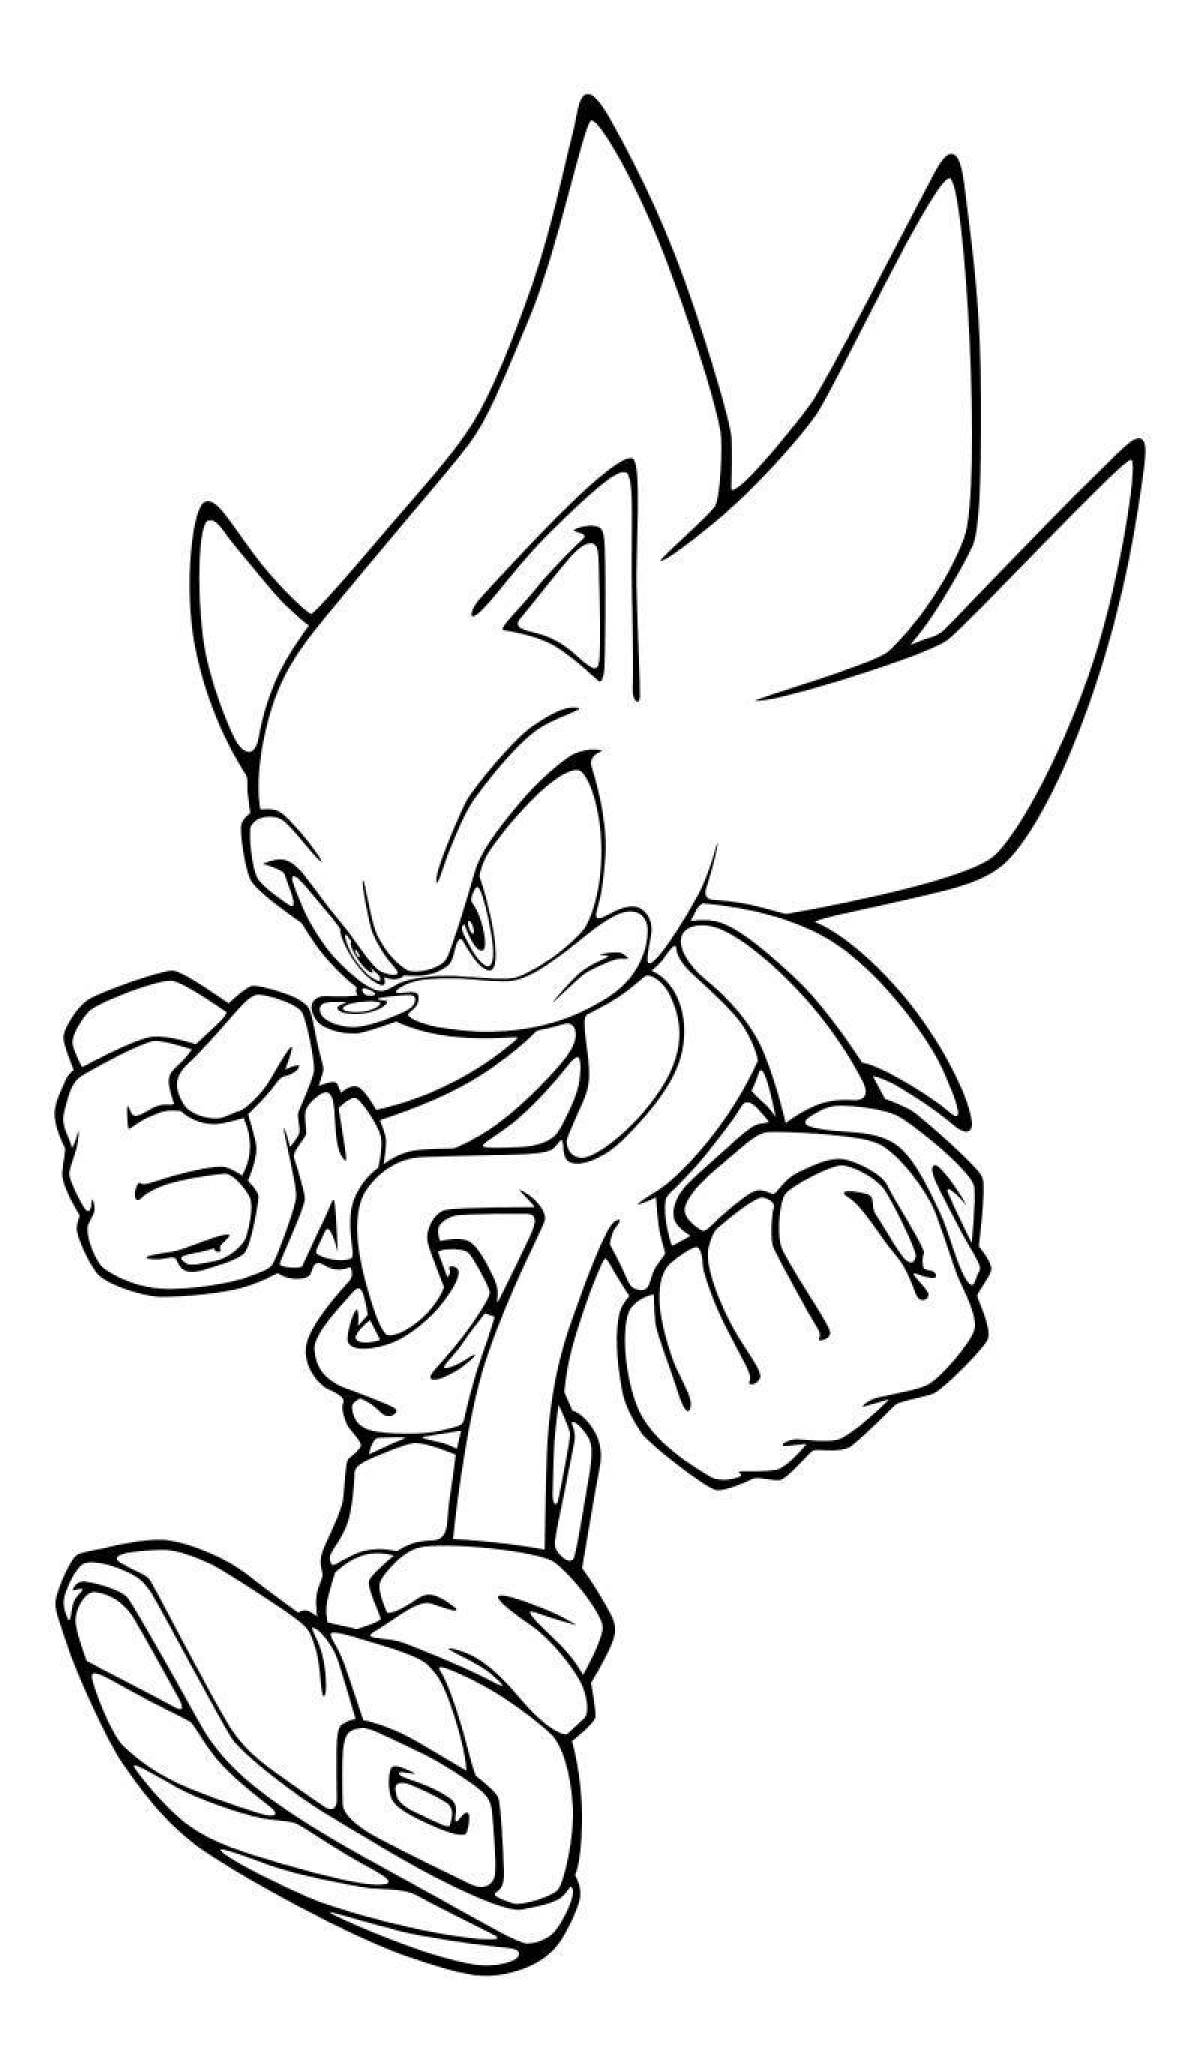 Sonic 2 fun coloring